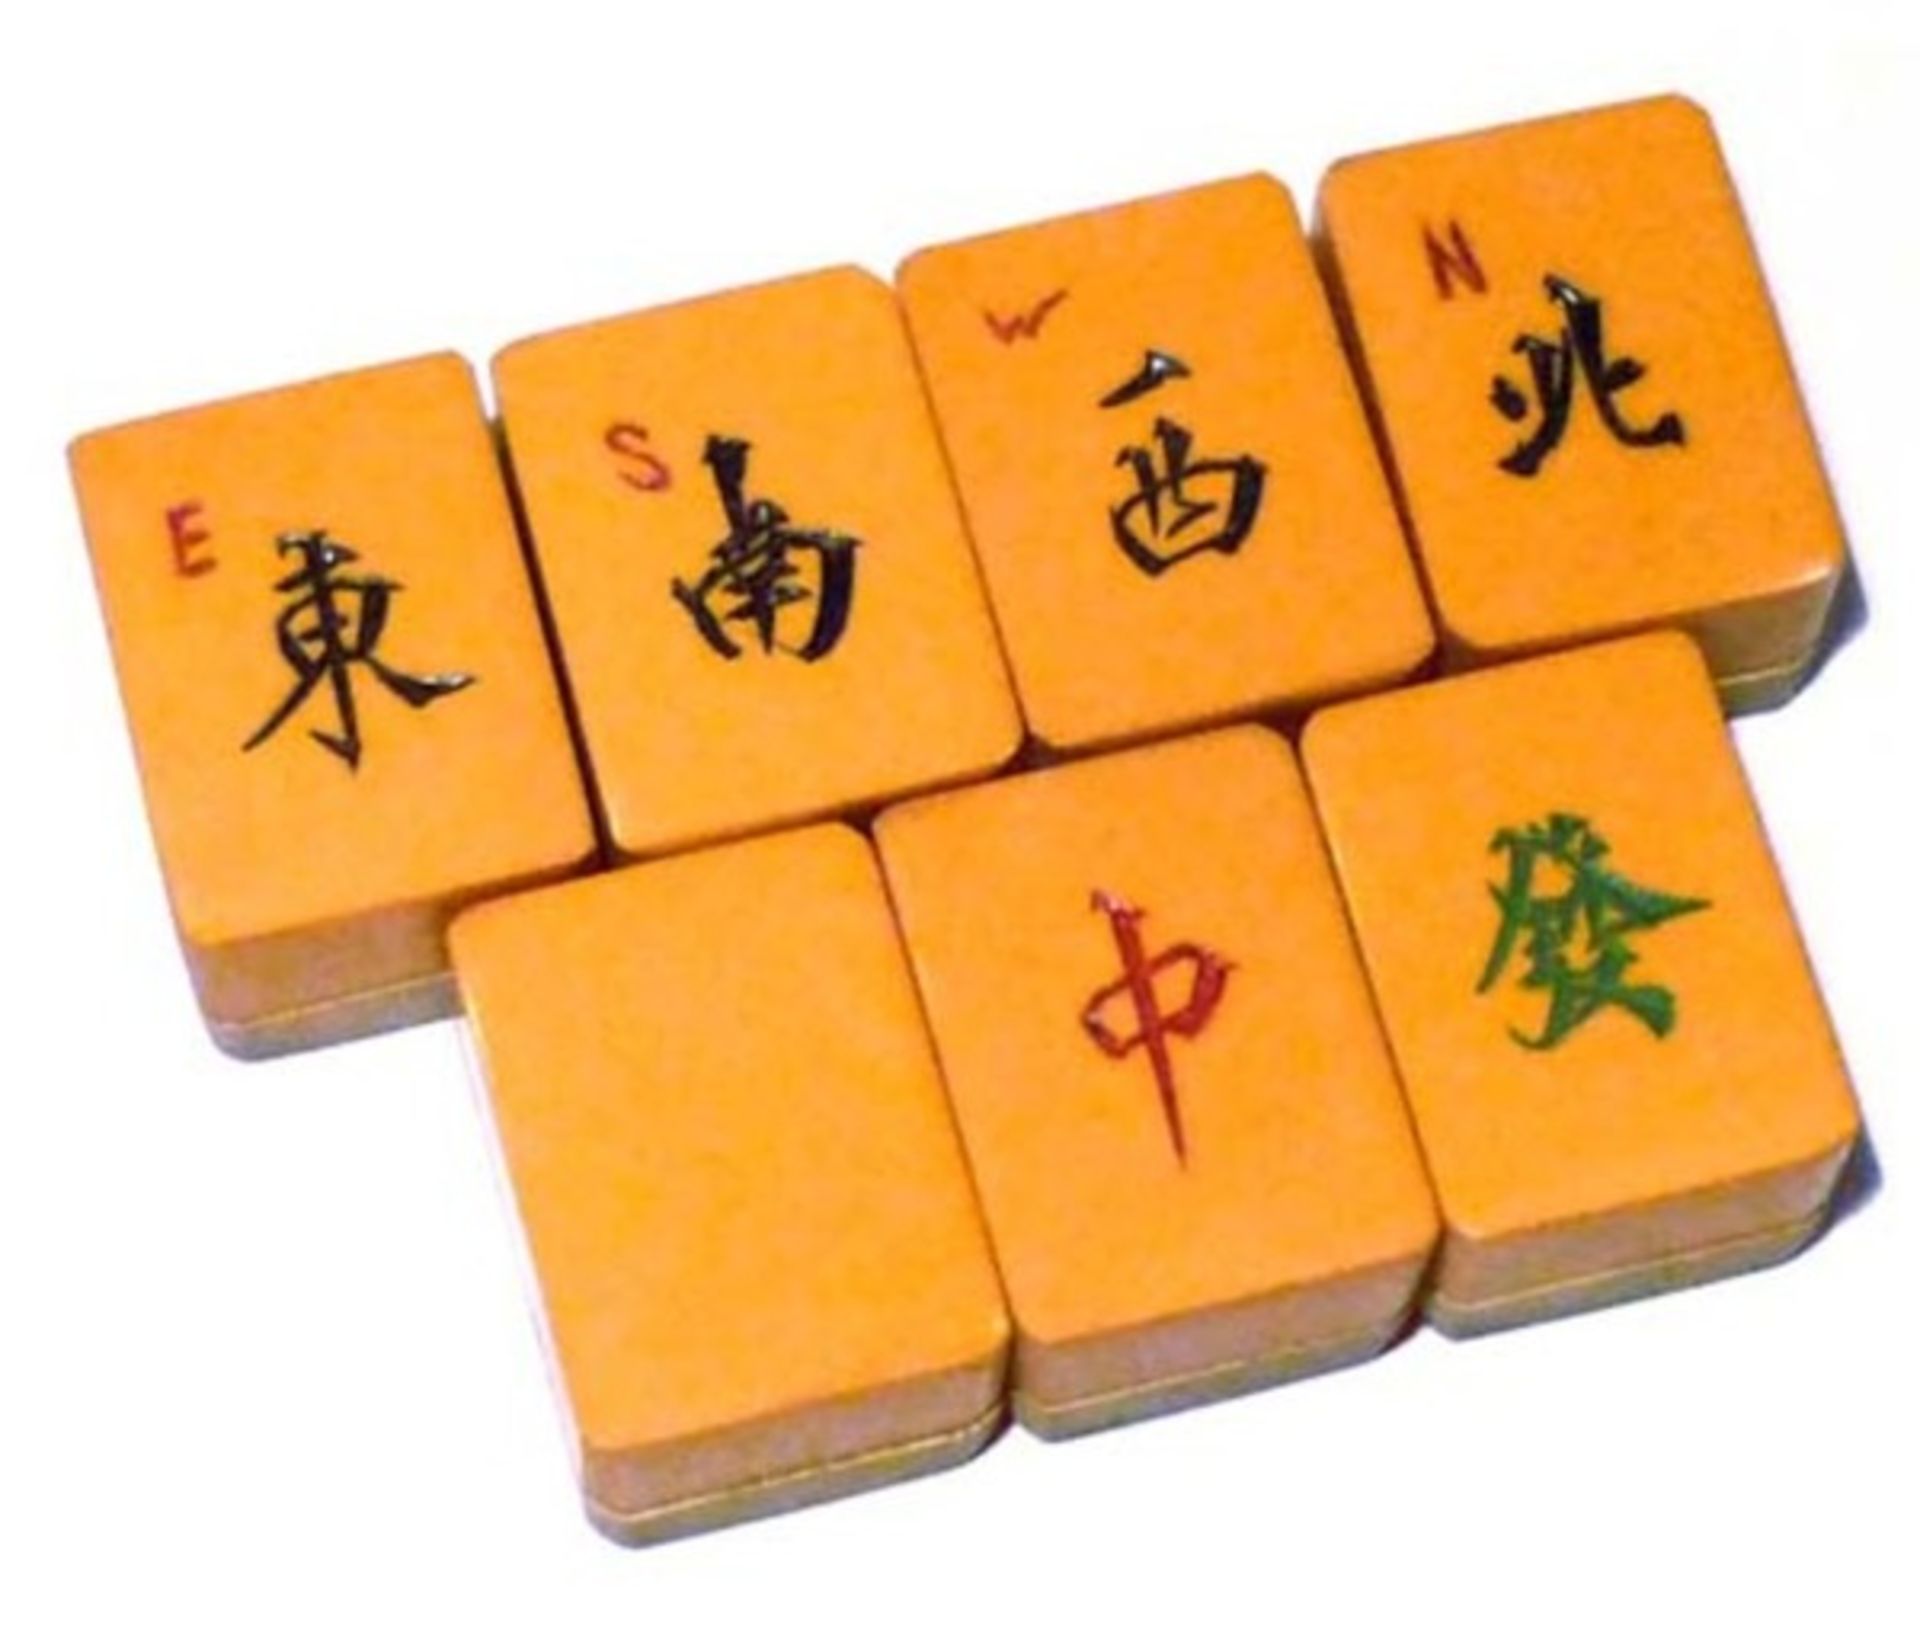 (Mahjong) Mahjong kunststof, stenen van kunststof en bamboe, ca. 1935 - Bild 13 aus 13